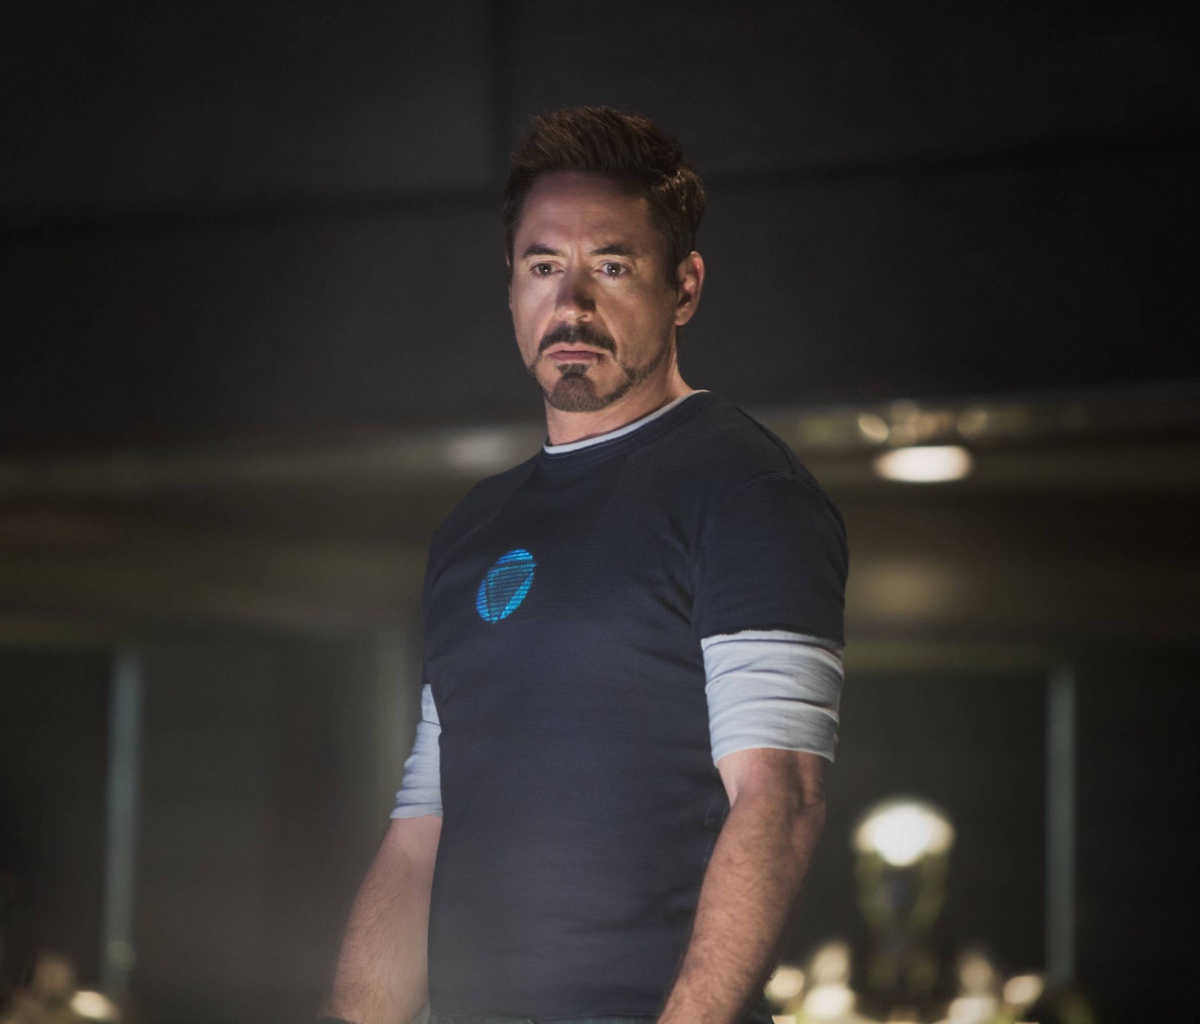 Robert Downey Jr As Iron Man 3 wallpaper 1200x1024